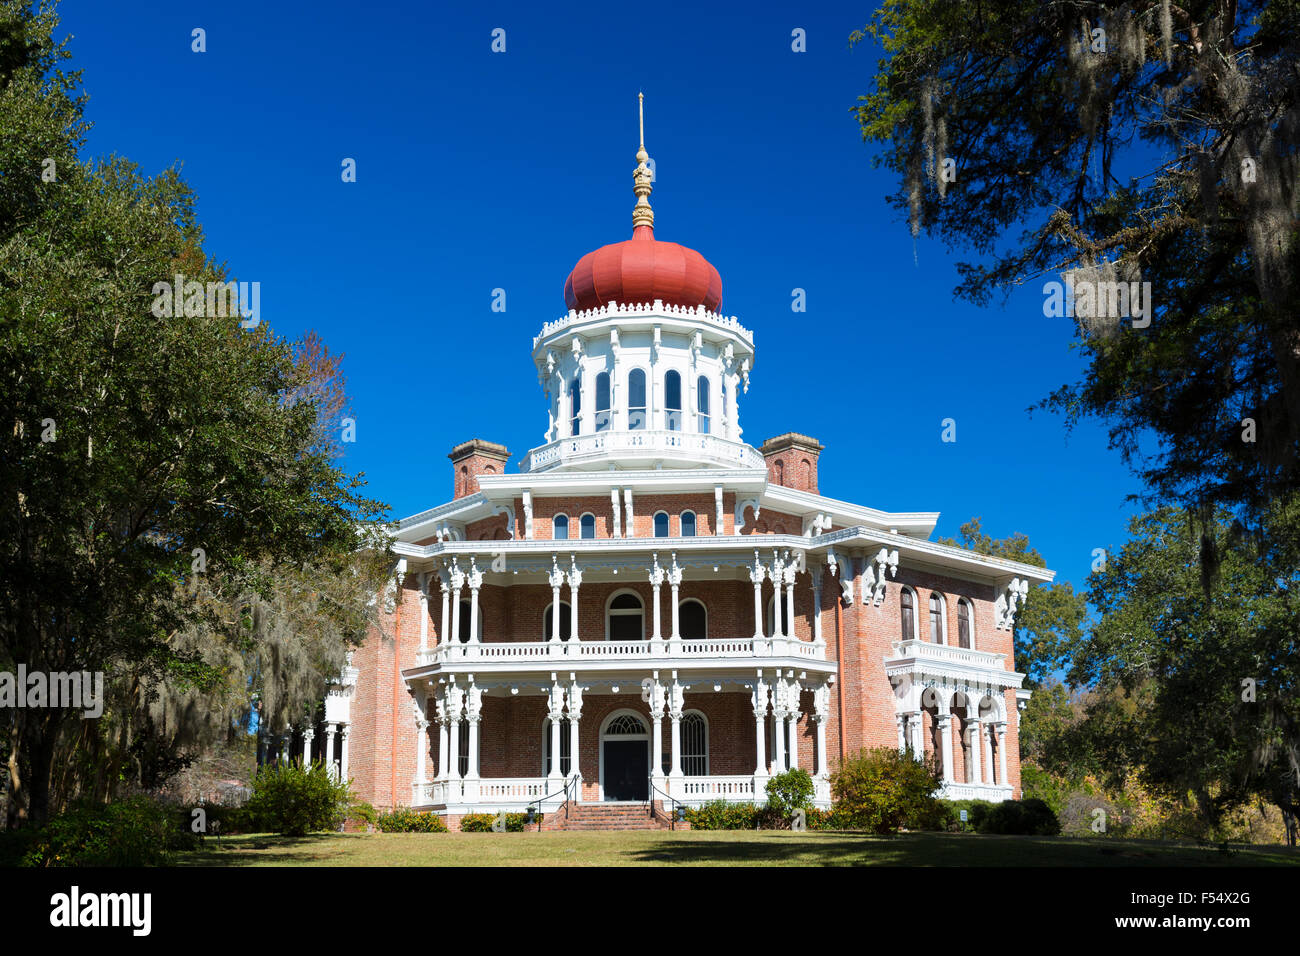 Longwood plantation d'avant du 19e siècle hôtel particulier avec toit dôme byzantin, vivre avec de la mousse de chêne, Natchez, Mississippi USA Banque D'Images